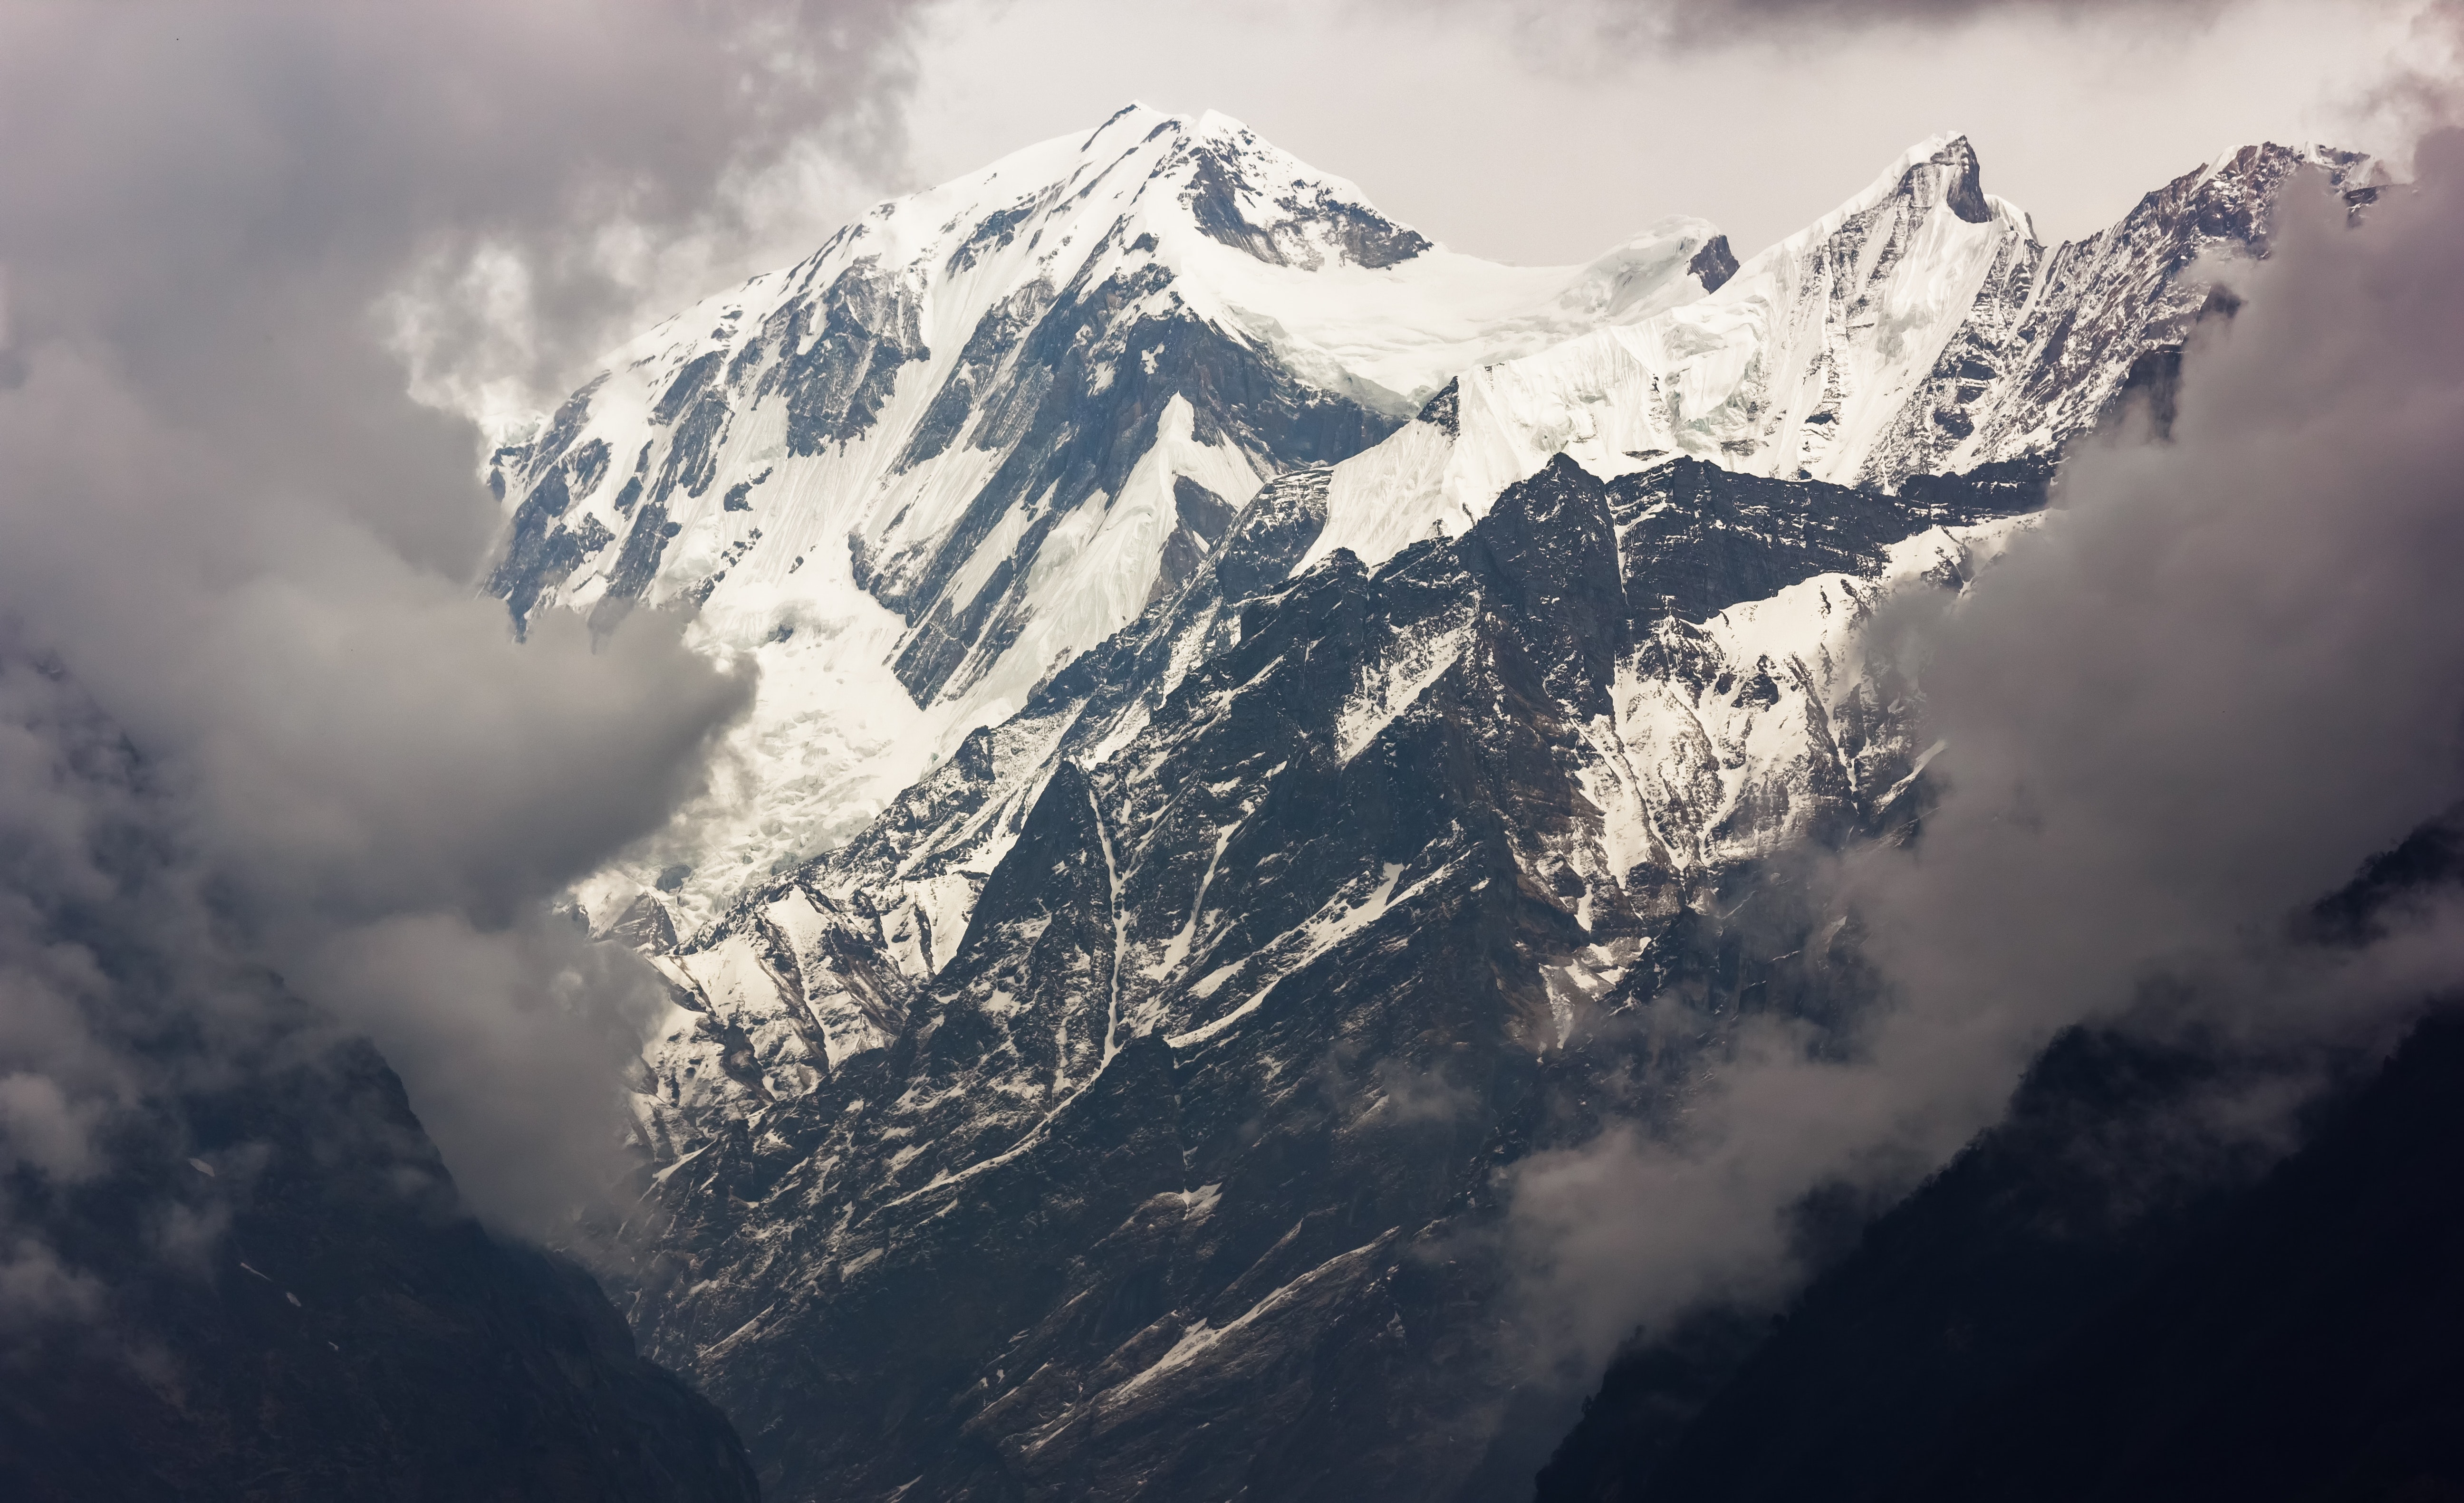 Himalayas Cloudy Mountains Top Wallpapers